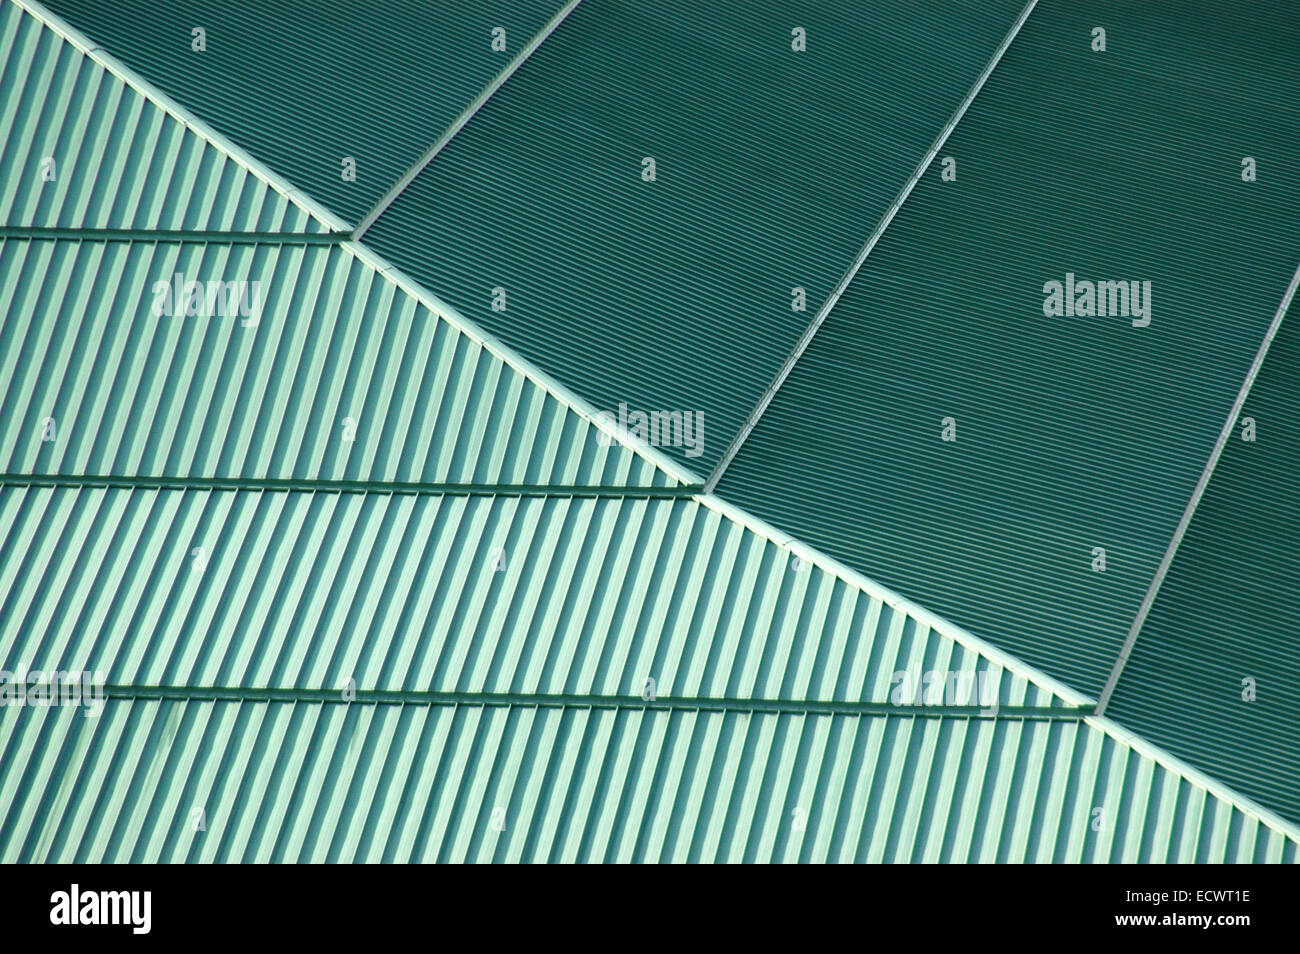 Dachbegrünung auf einem Konferenzgebäude Stockfoto